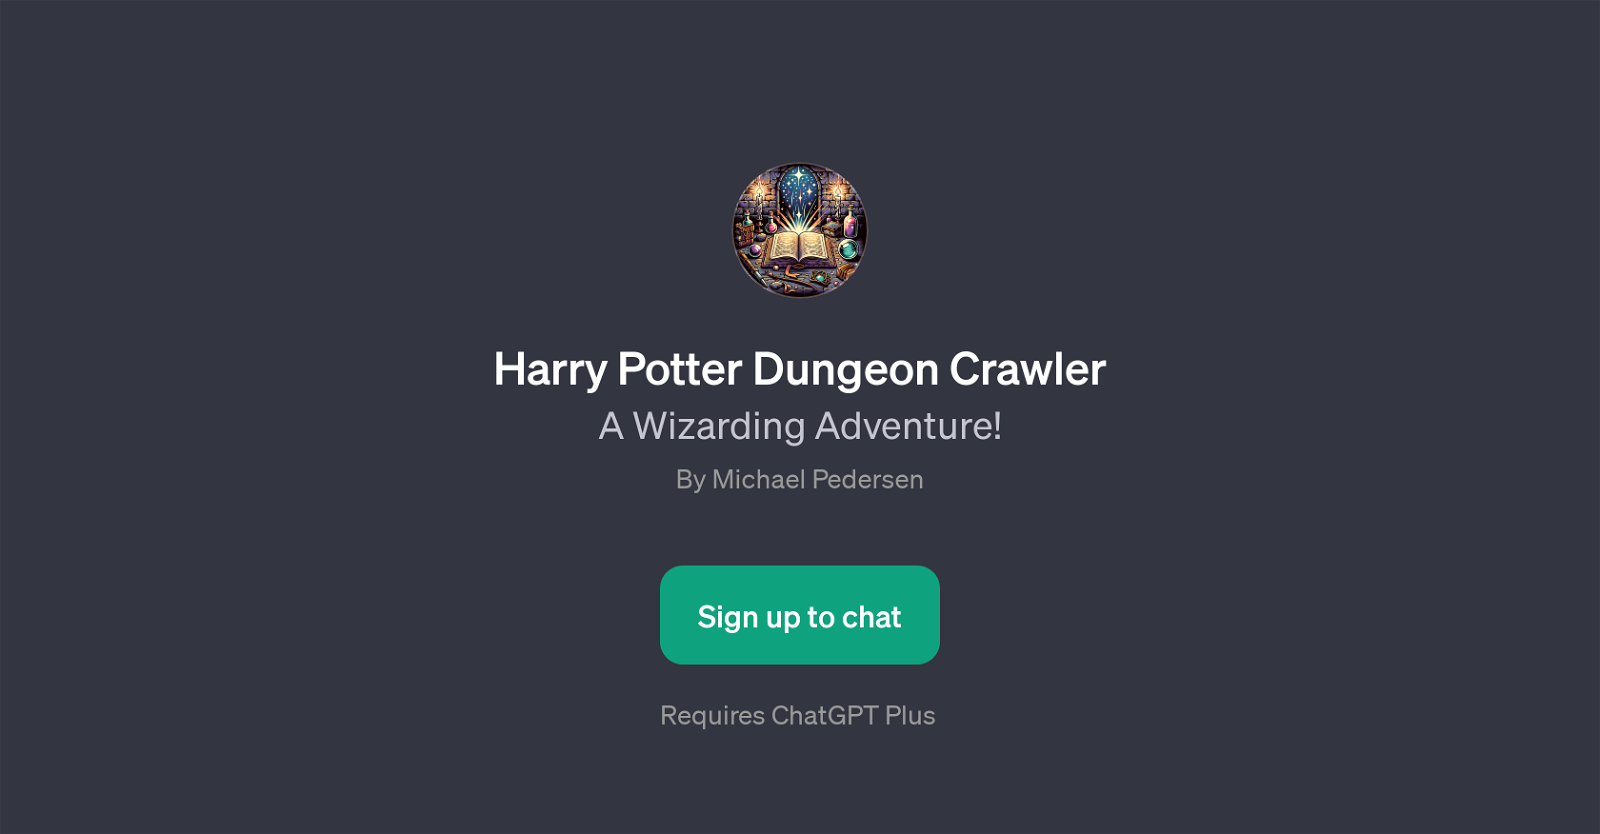 Harry Potter Dungeon Crawler website